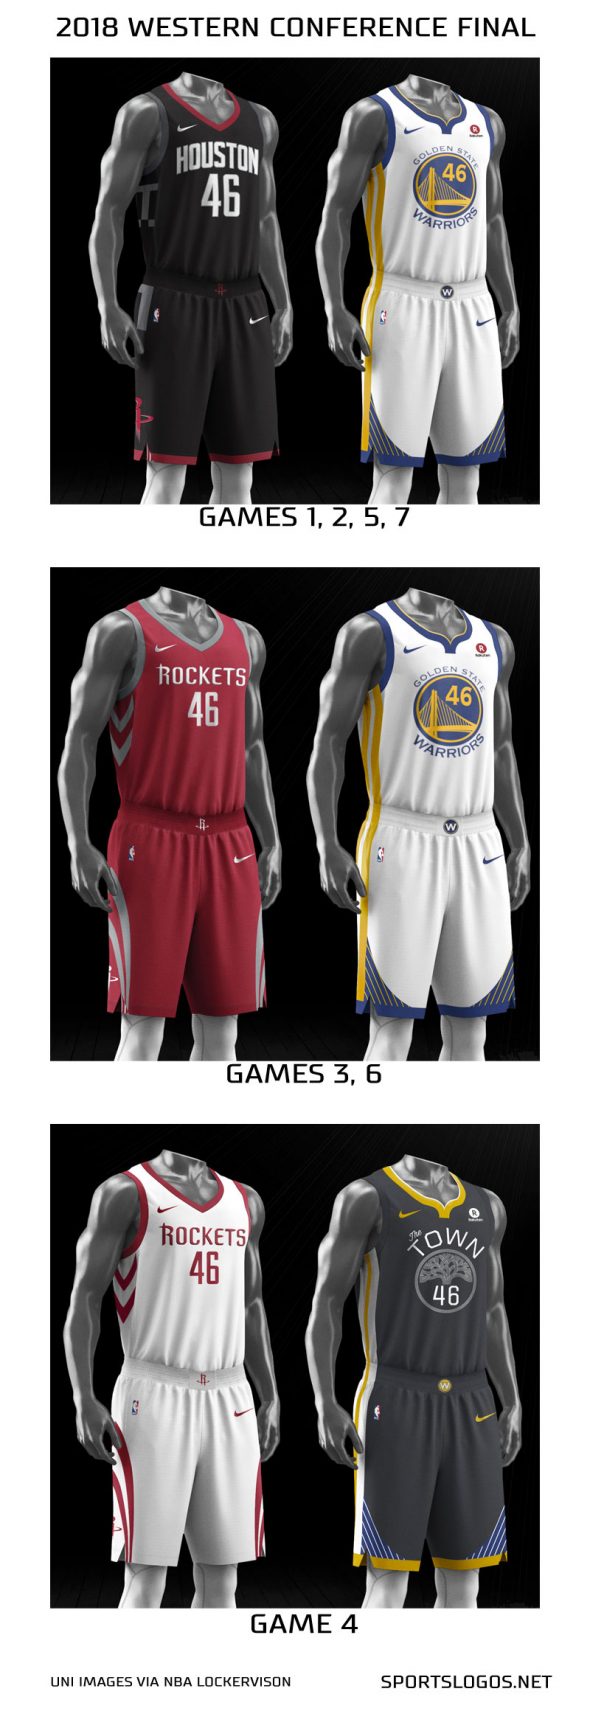 Warriors-Rockets Uniform Matchups Announced – SportsLogos.Net News